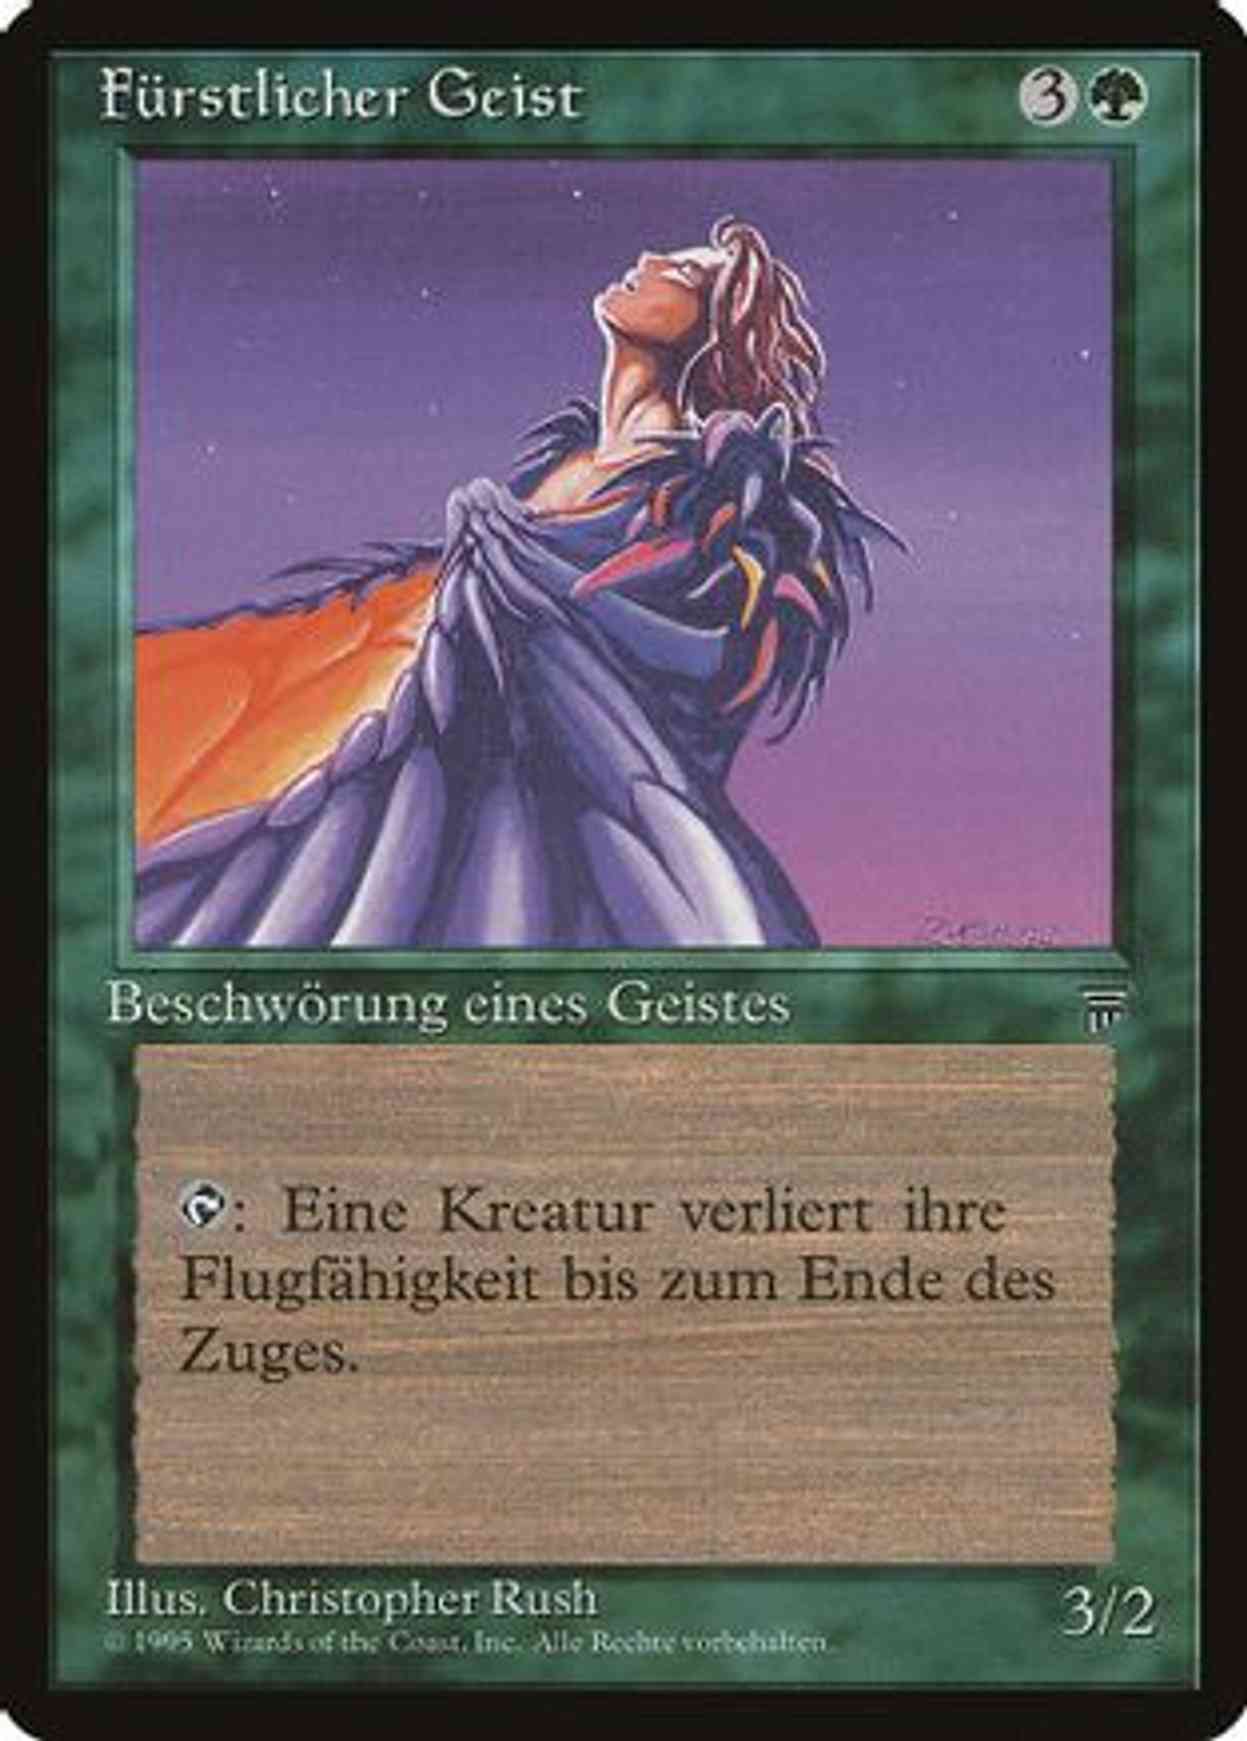 Radjan Spirit (German) - "Furstlicher Geist" magic card front